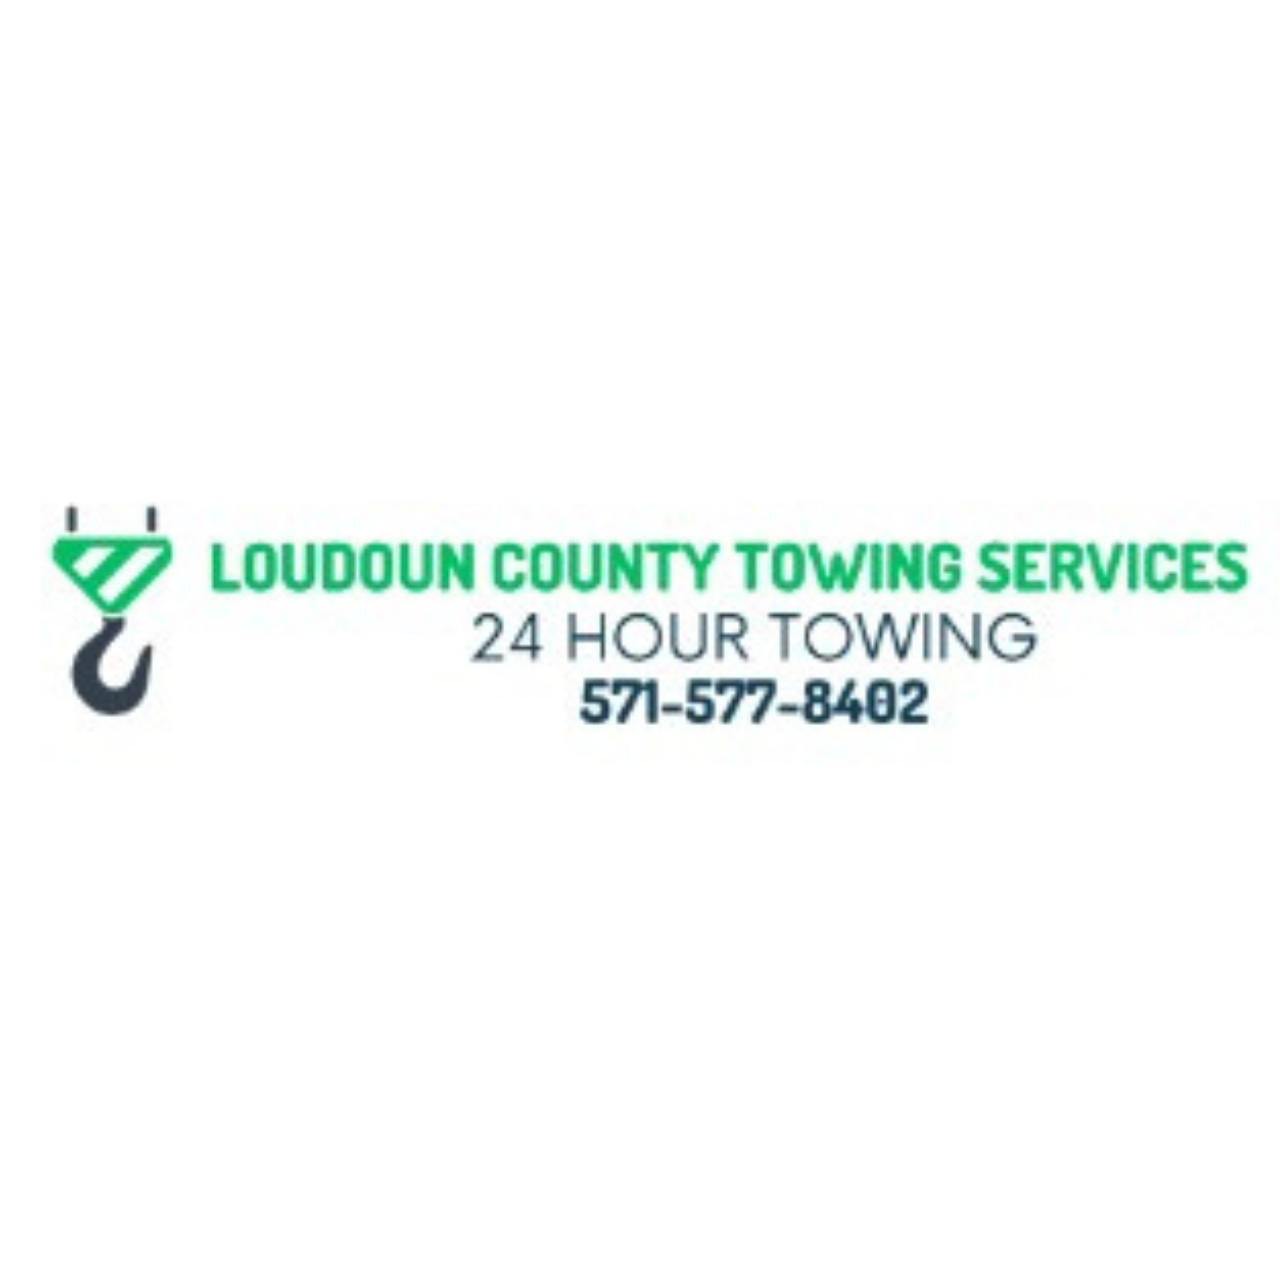 Loudoun County Towing Services